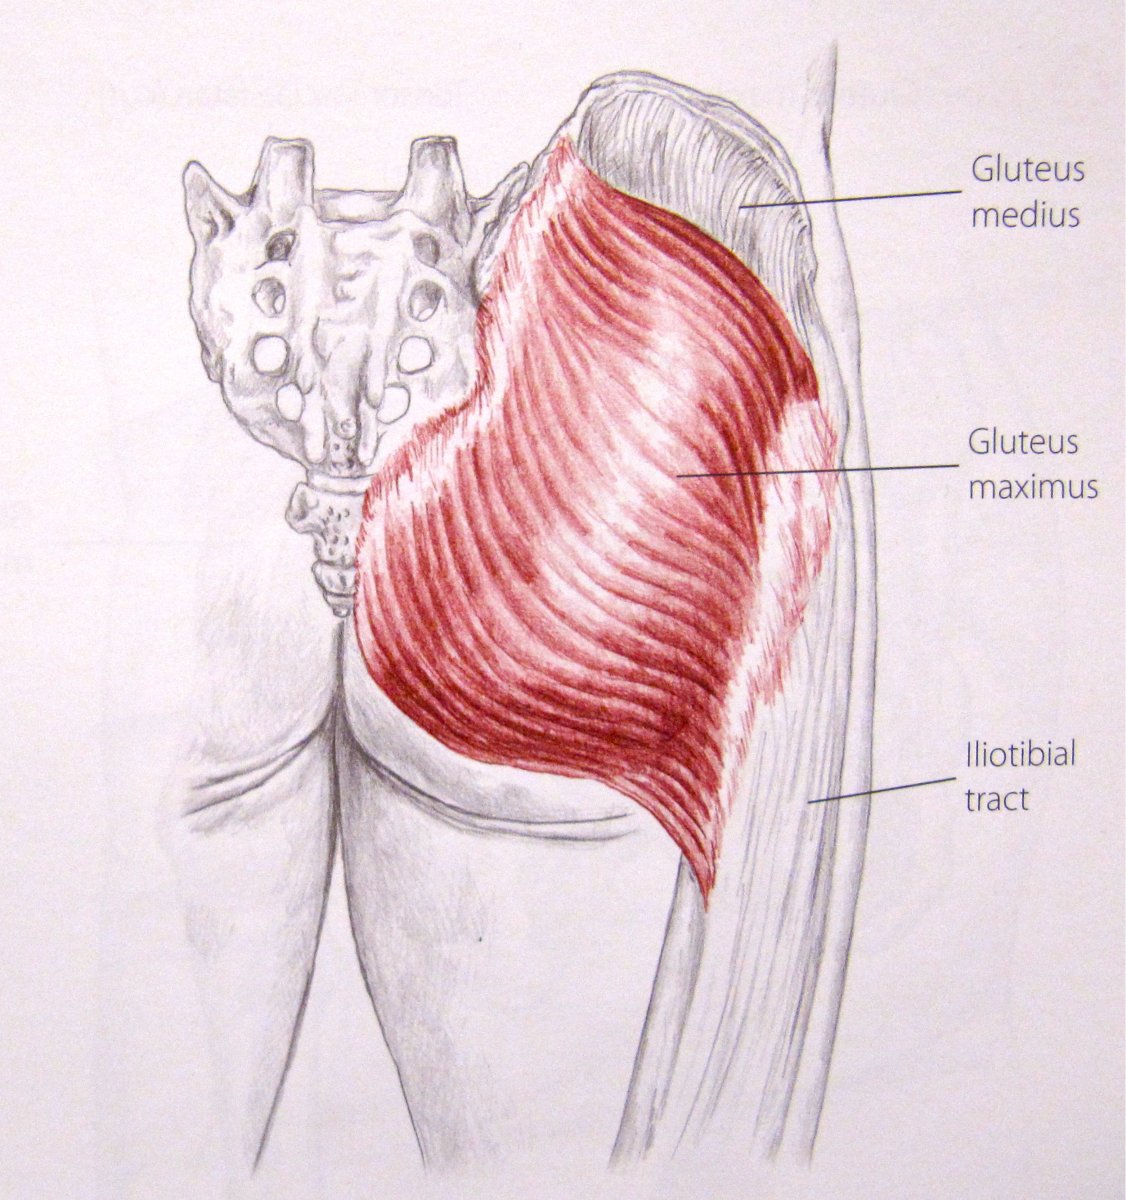 Мышца квадрицепс бедра анатомия